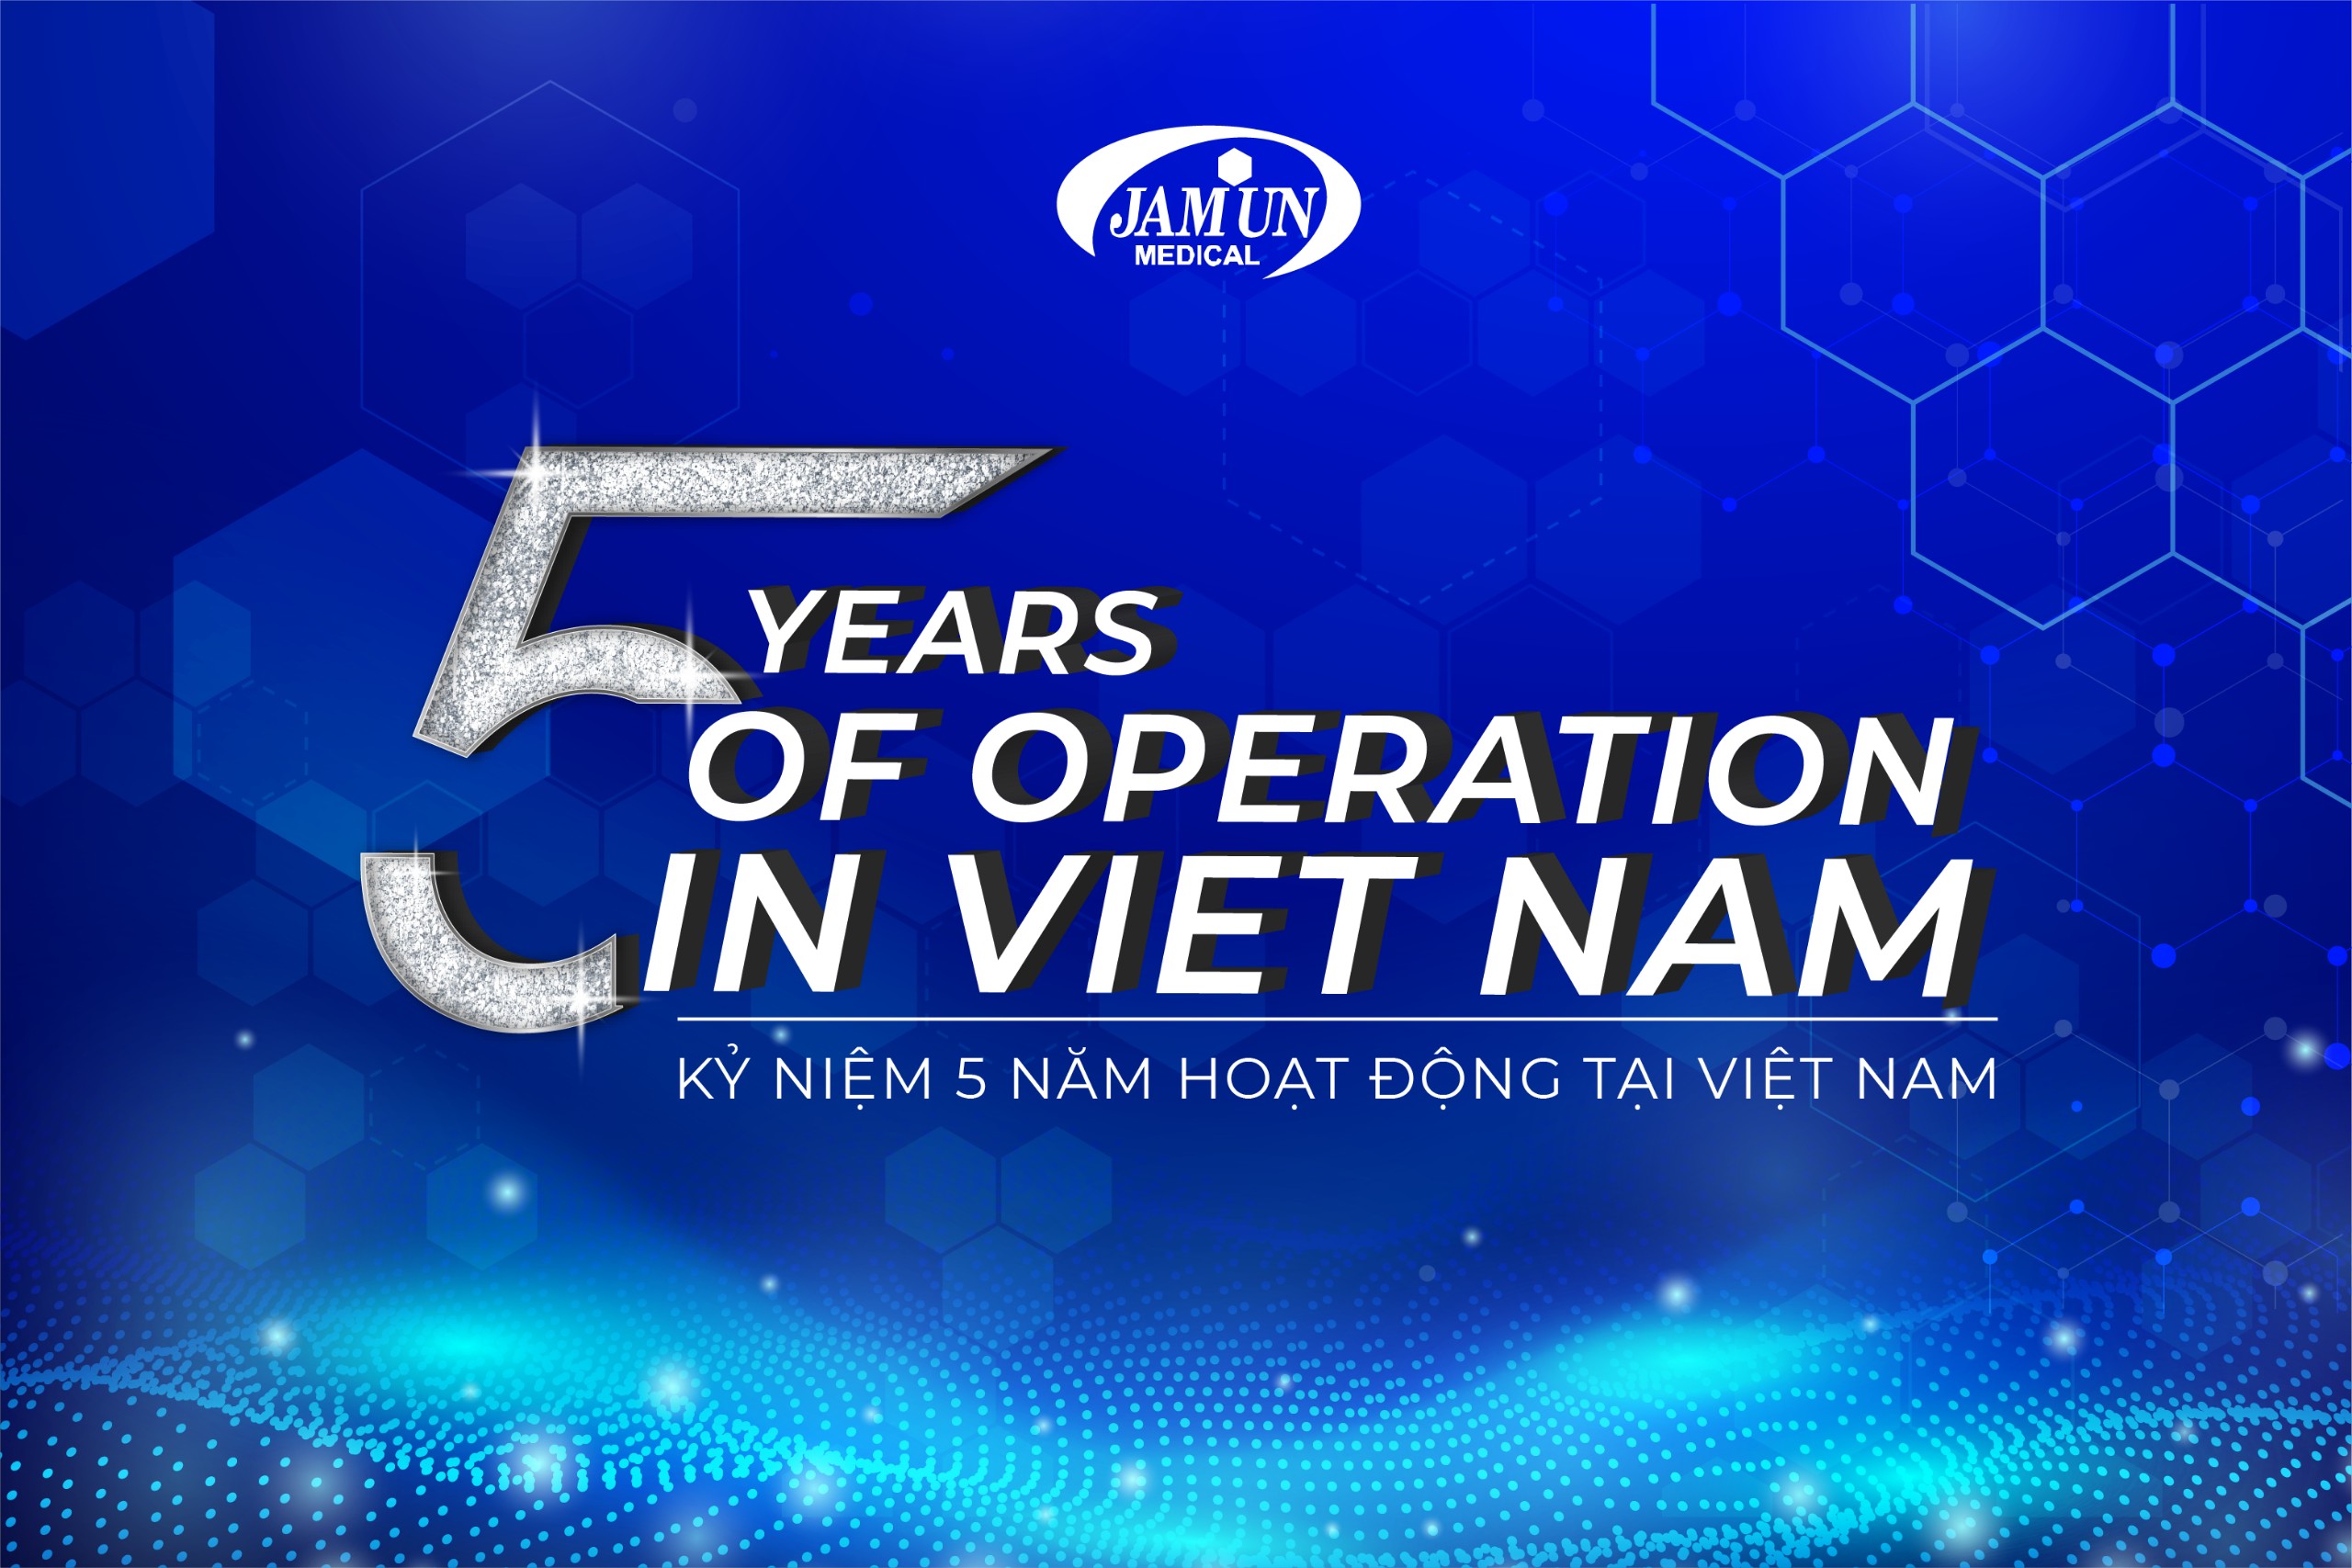 Jamun Việt Nam kỷ niệm 5 năm thành lập